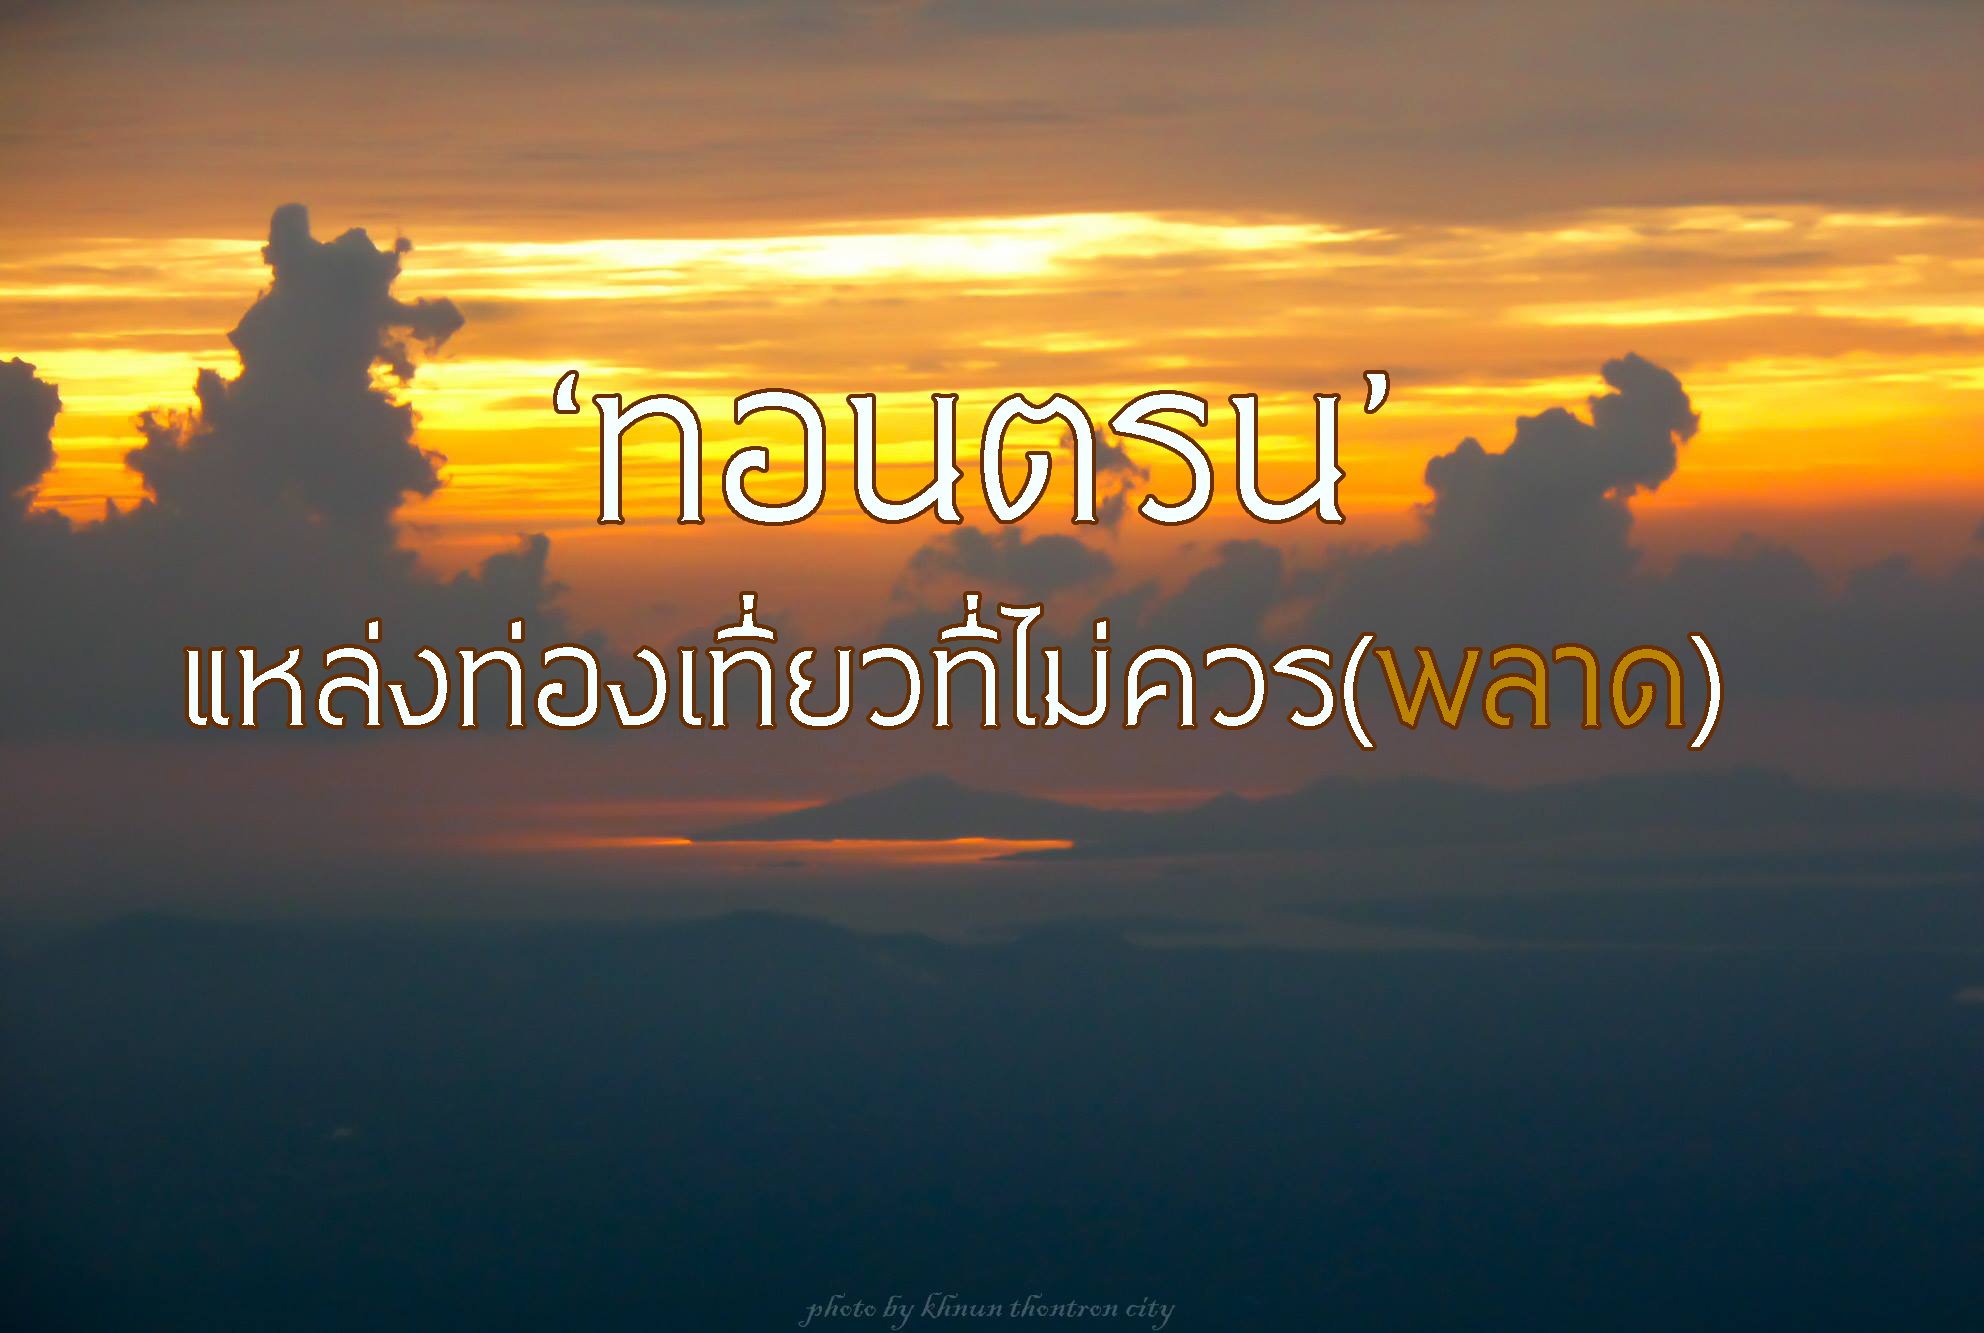 ‘ทอนตรน’ แหล่งท่องเที่ยวต้องห้าม(พลาด) thaihealth